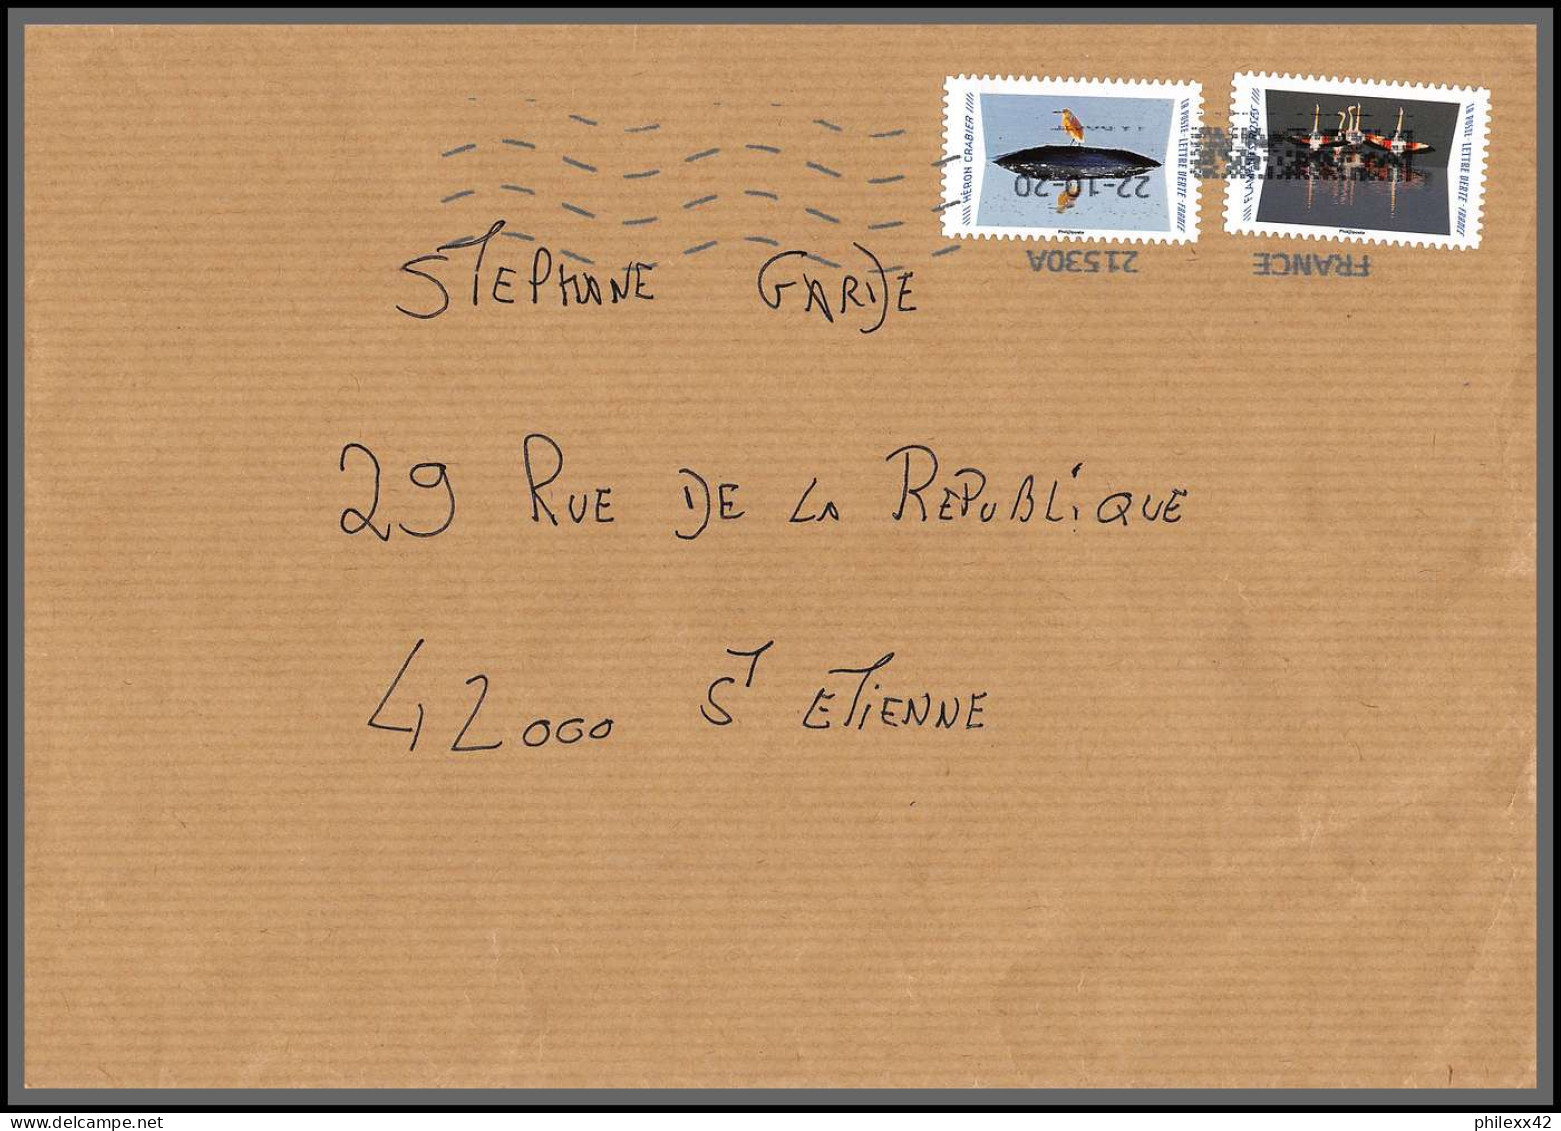 95884 - lot de 15 courriers lettres enveloppes de l'année 2020 divers affranchissements en EUROS